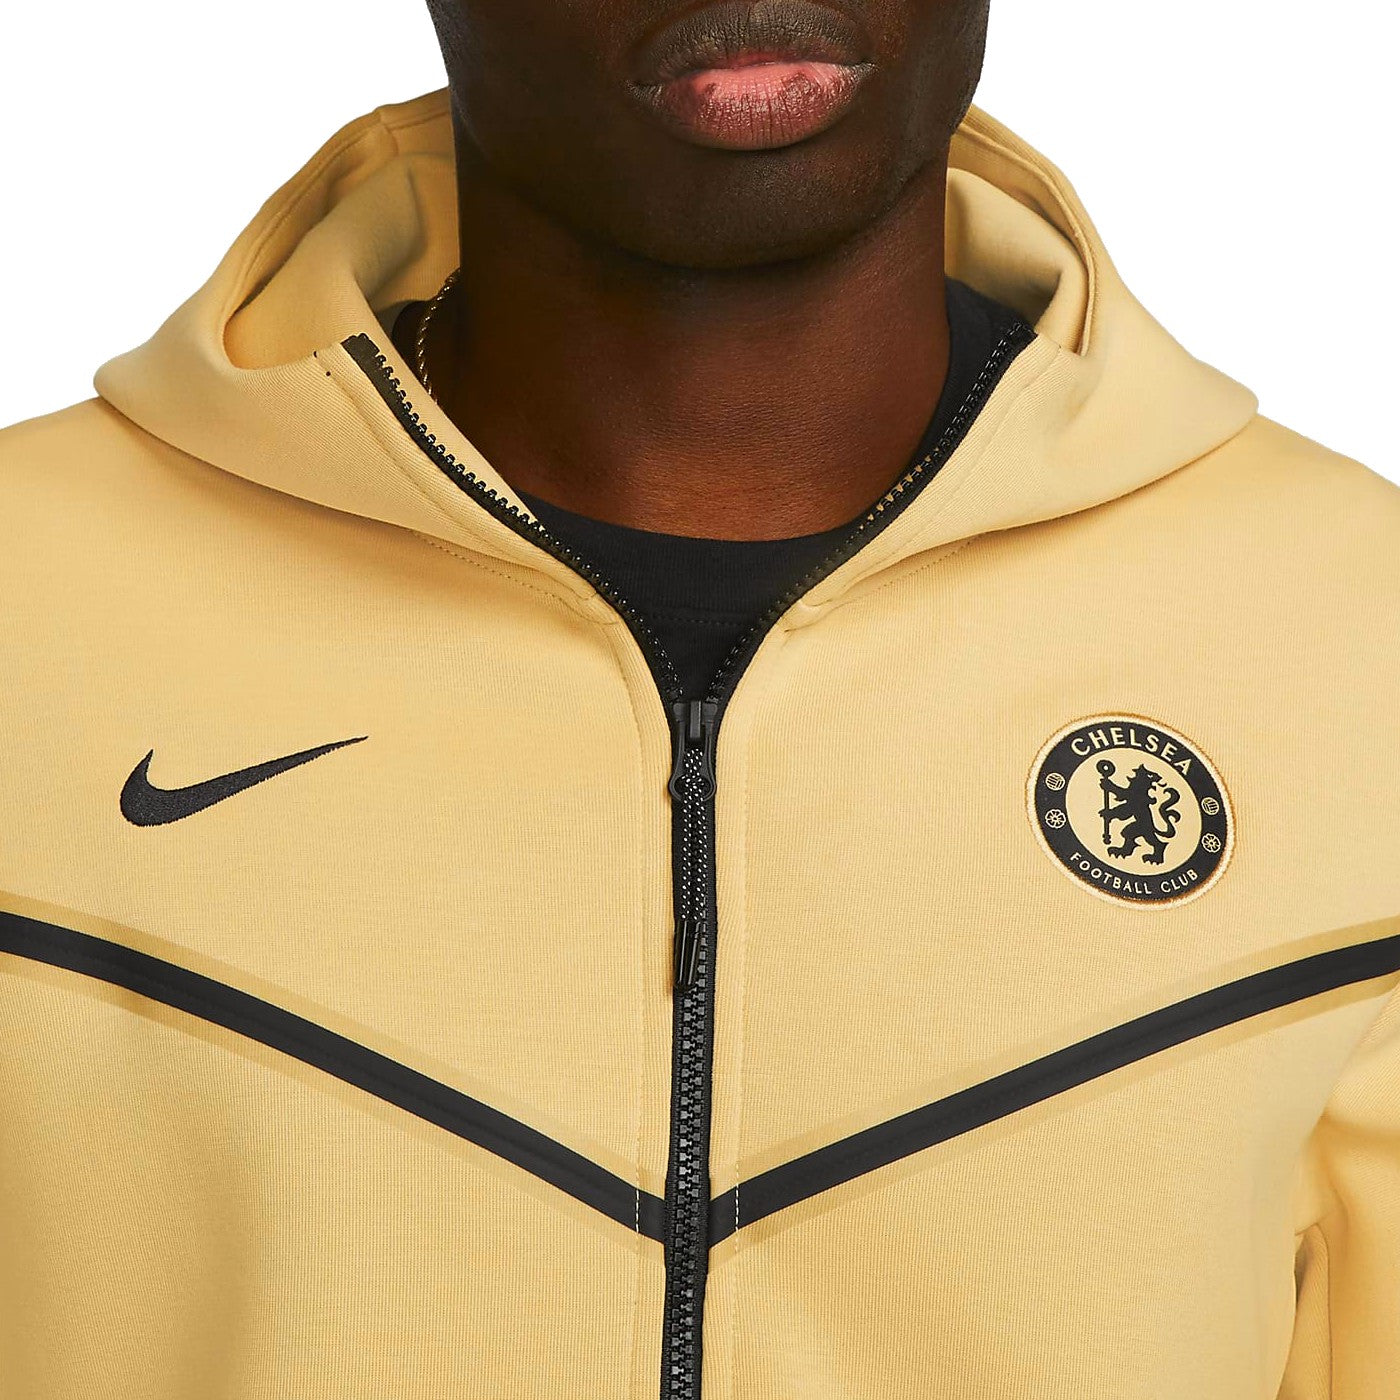 Equipo de juegos Parque jurásico Frente al mar Chelsea FC Tech Fleece gold/black presentation jacket 2022/23 - Nike –  SoccerTracksuits.com